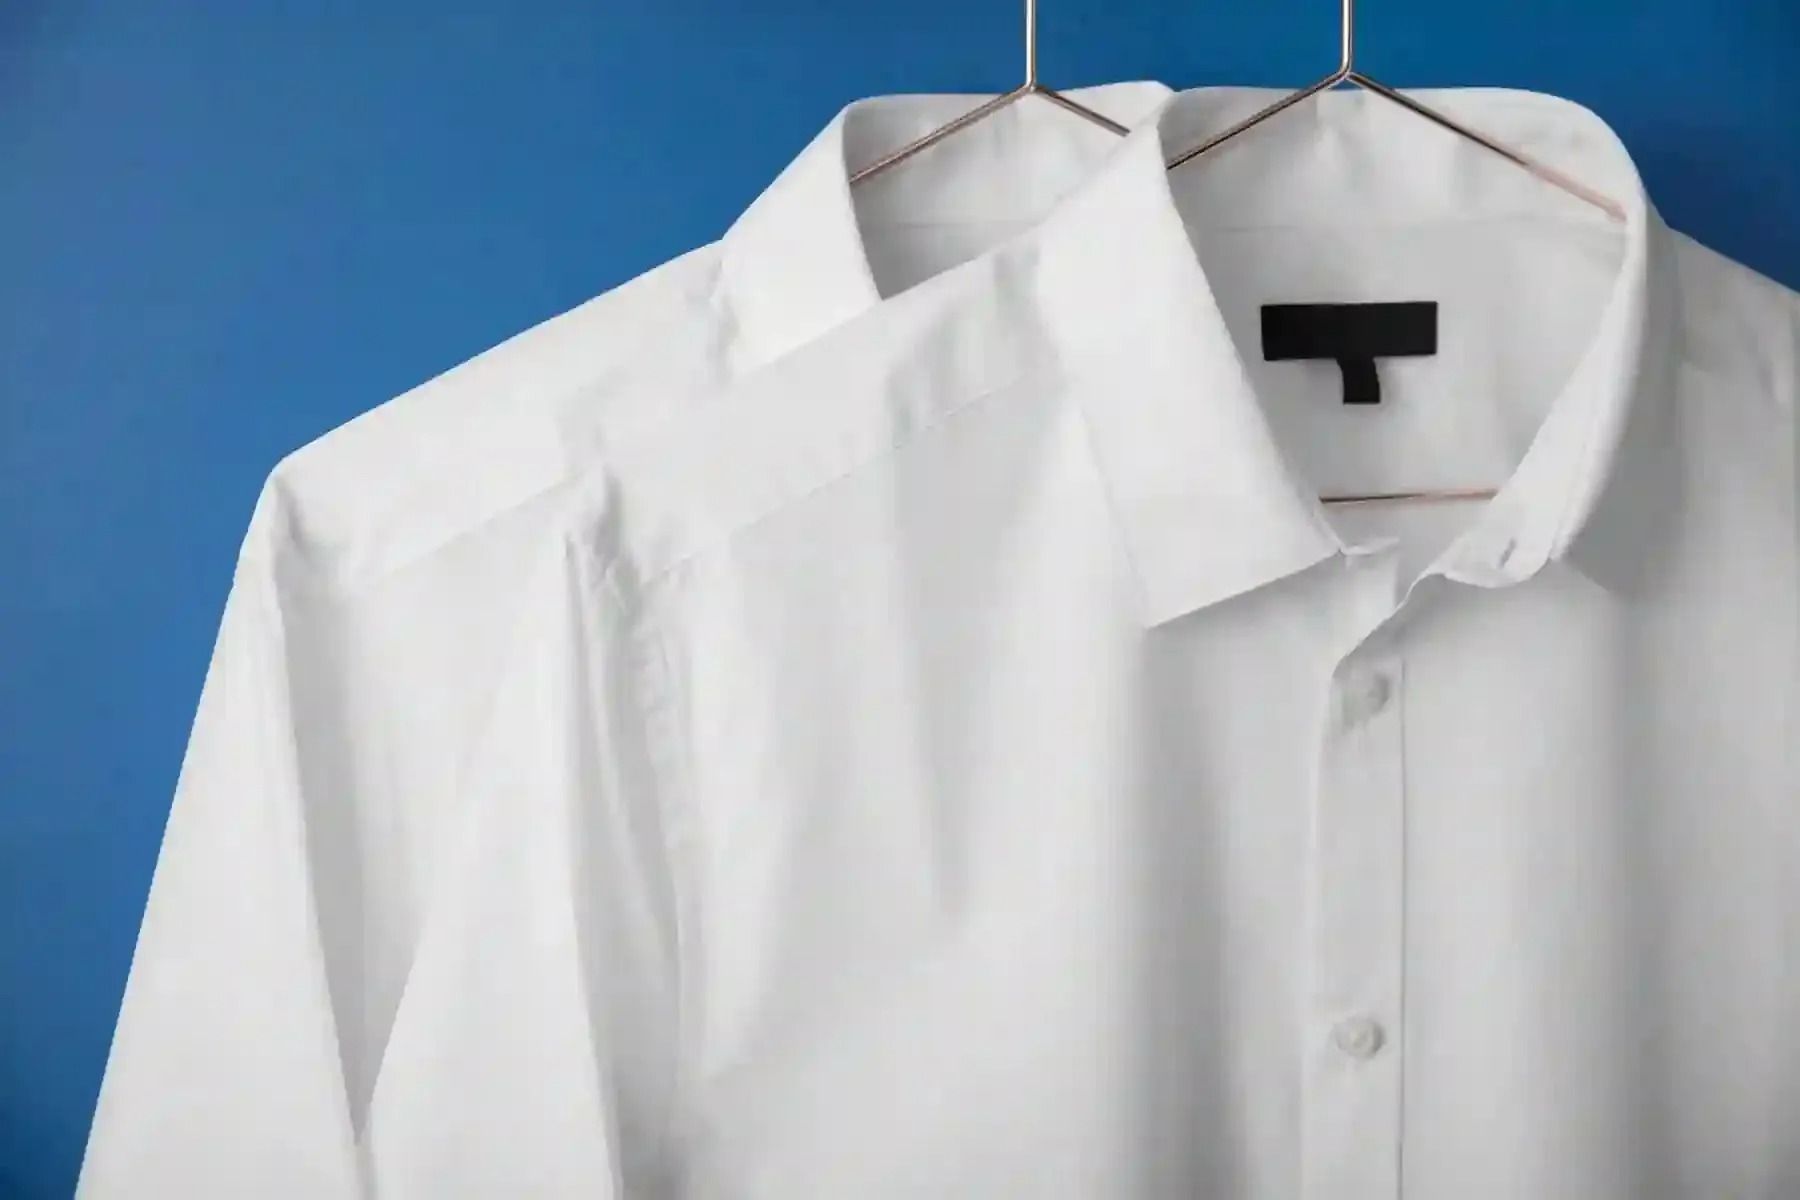 تفسير حلم الثوب الأبيض للرجل